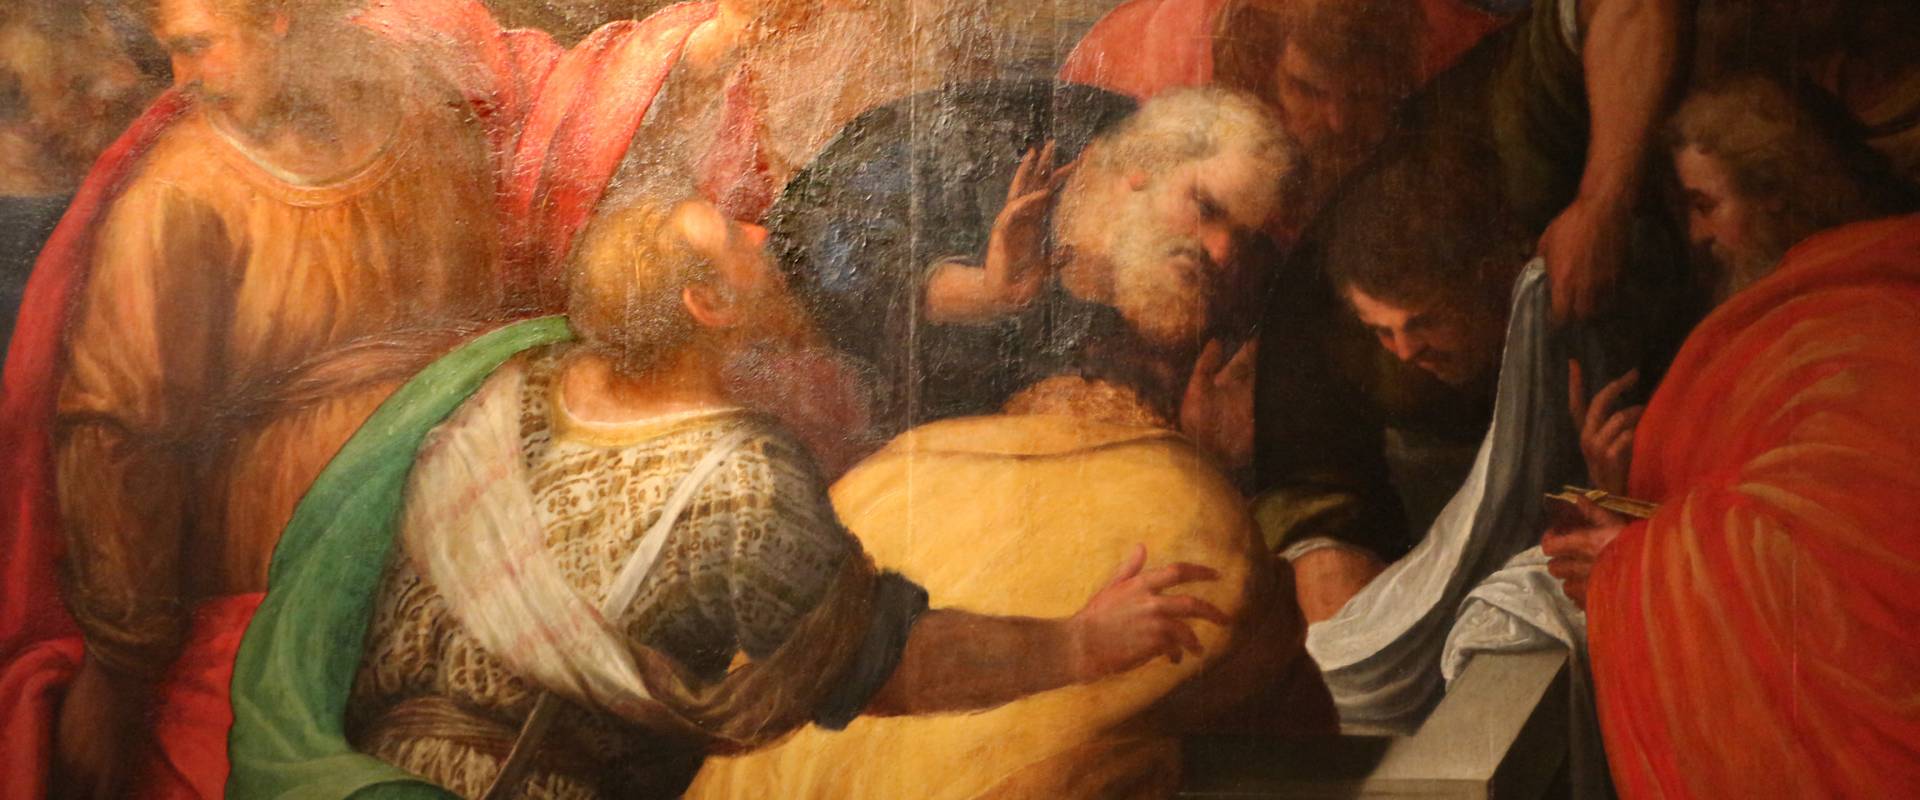 Leonardo da brescia, assunzione della vergine, 1550-1600 ca. (ferrara), dalla chiesa del gesù a ferrara 02 photo by Sailko